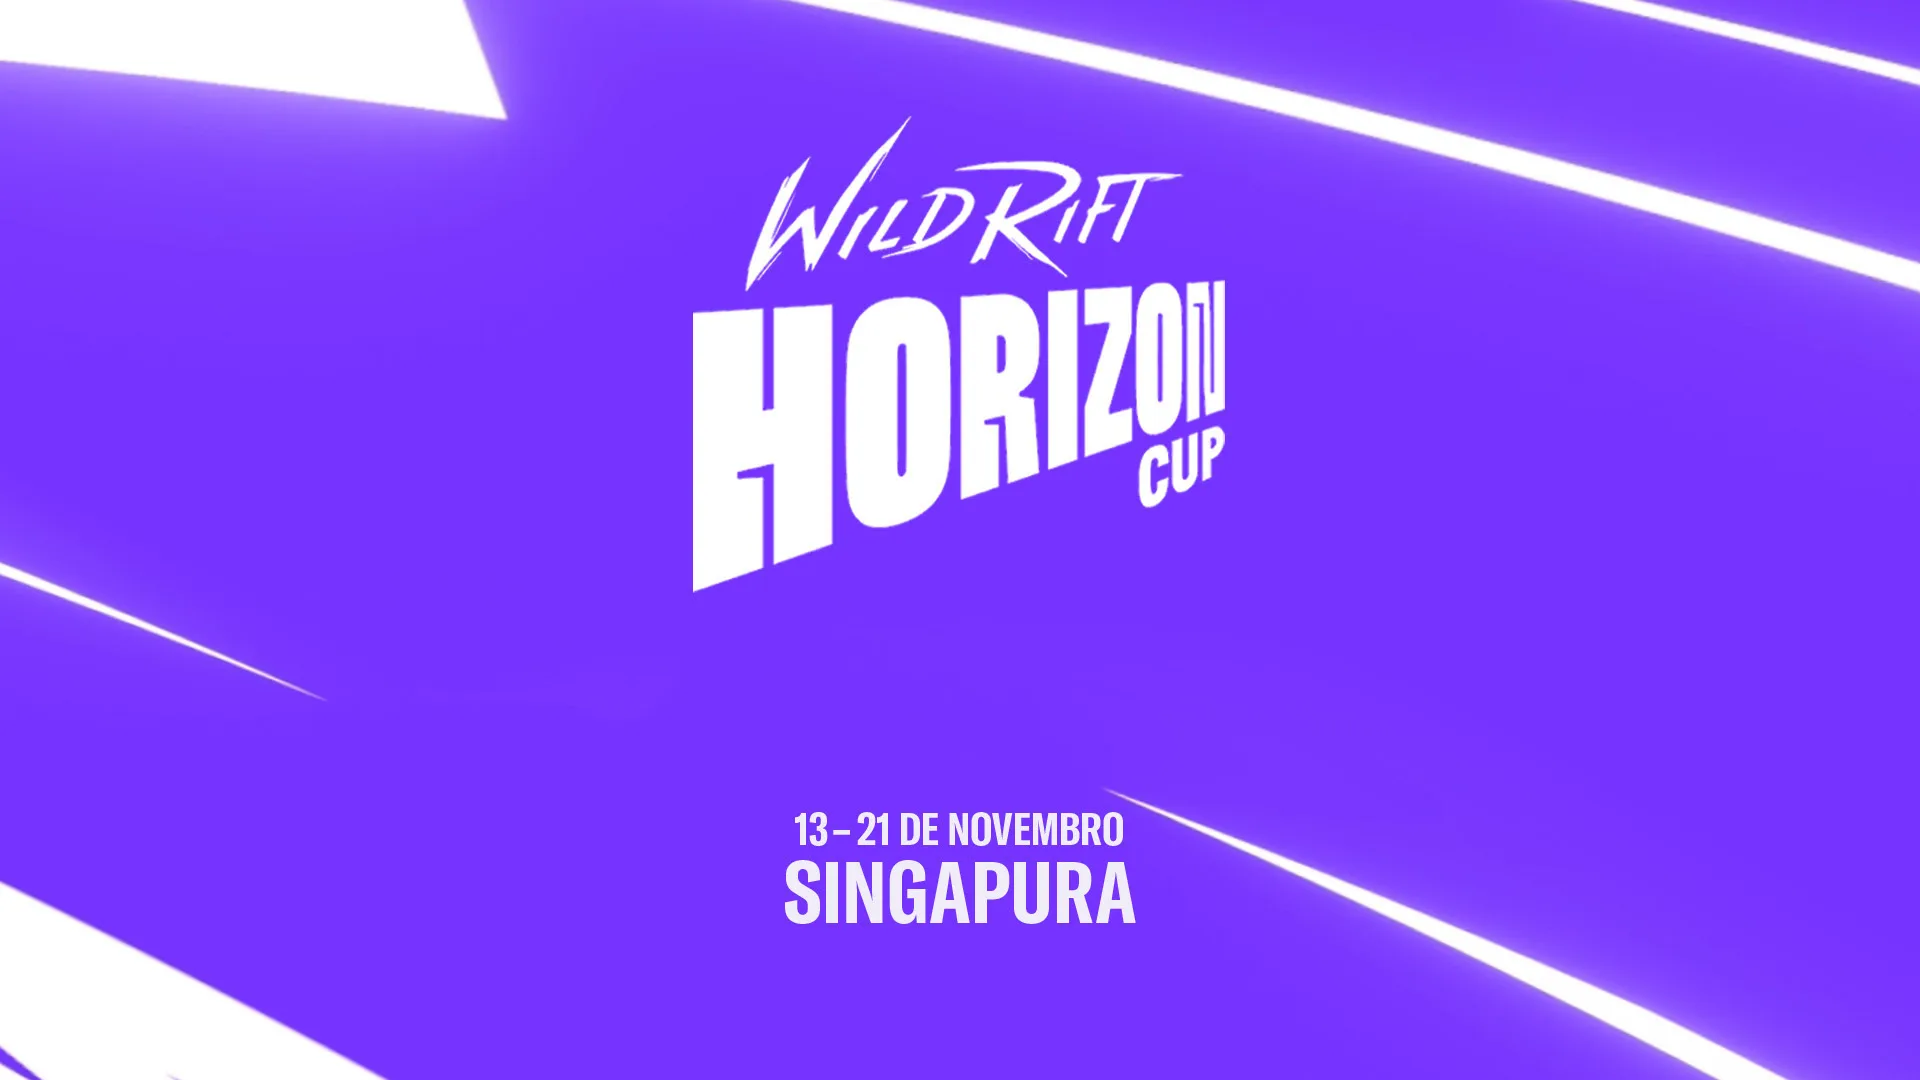 Wild Rift Horizon Cup é apresentado pela Riot Games